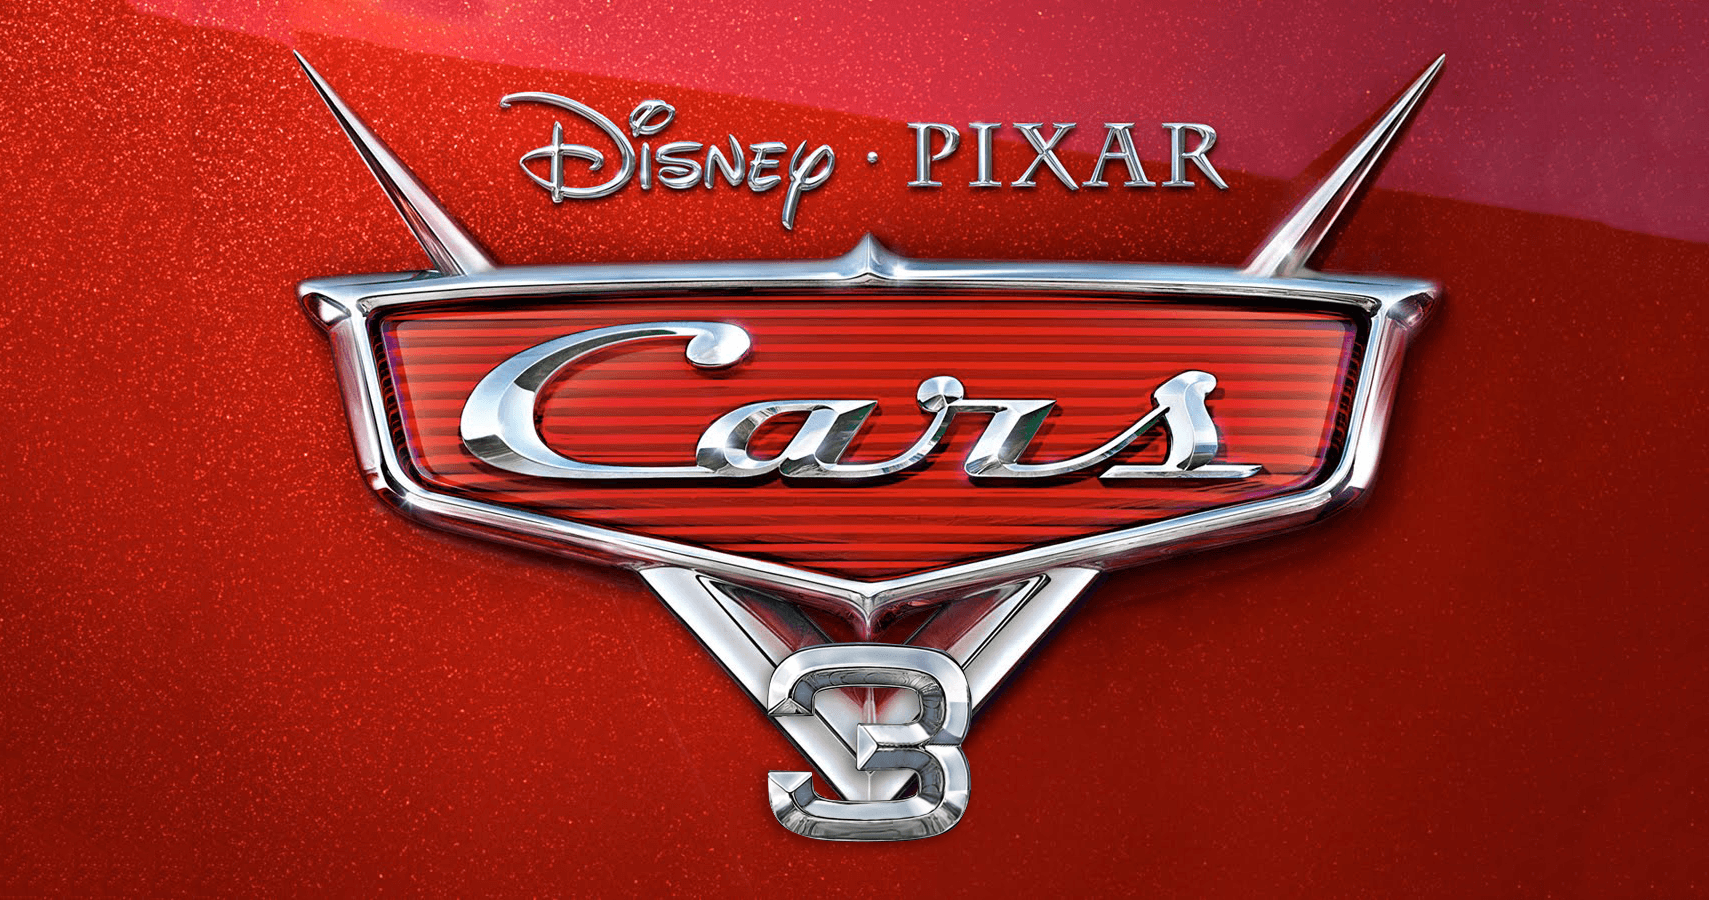 Pixar Cars Blank Logo - Cars 3 Logos